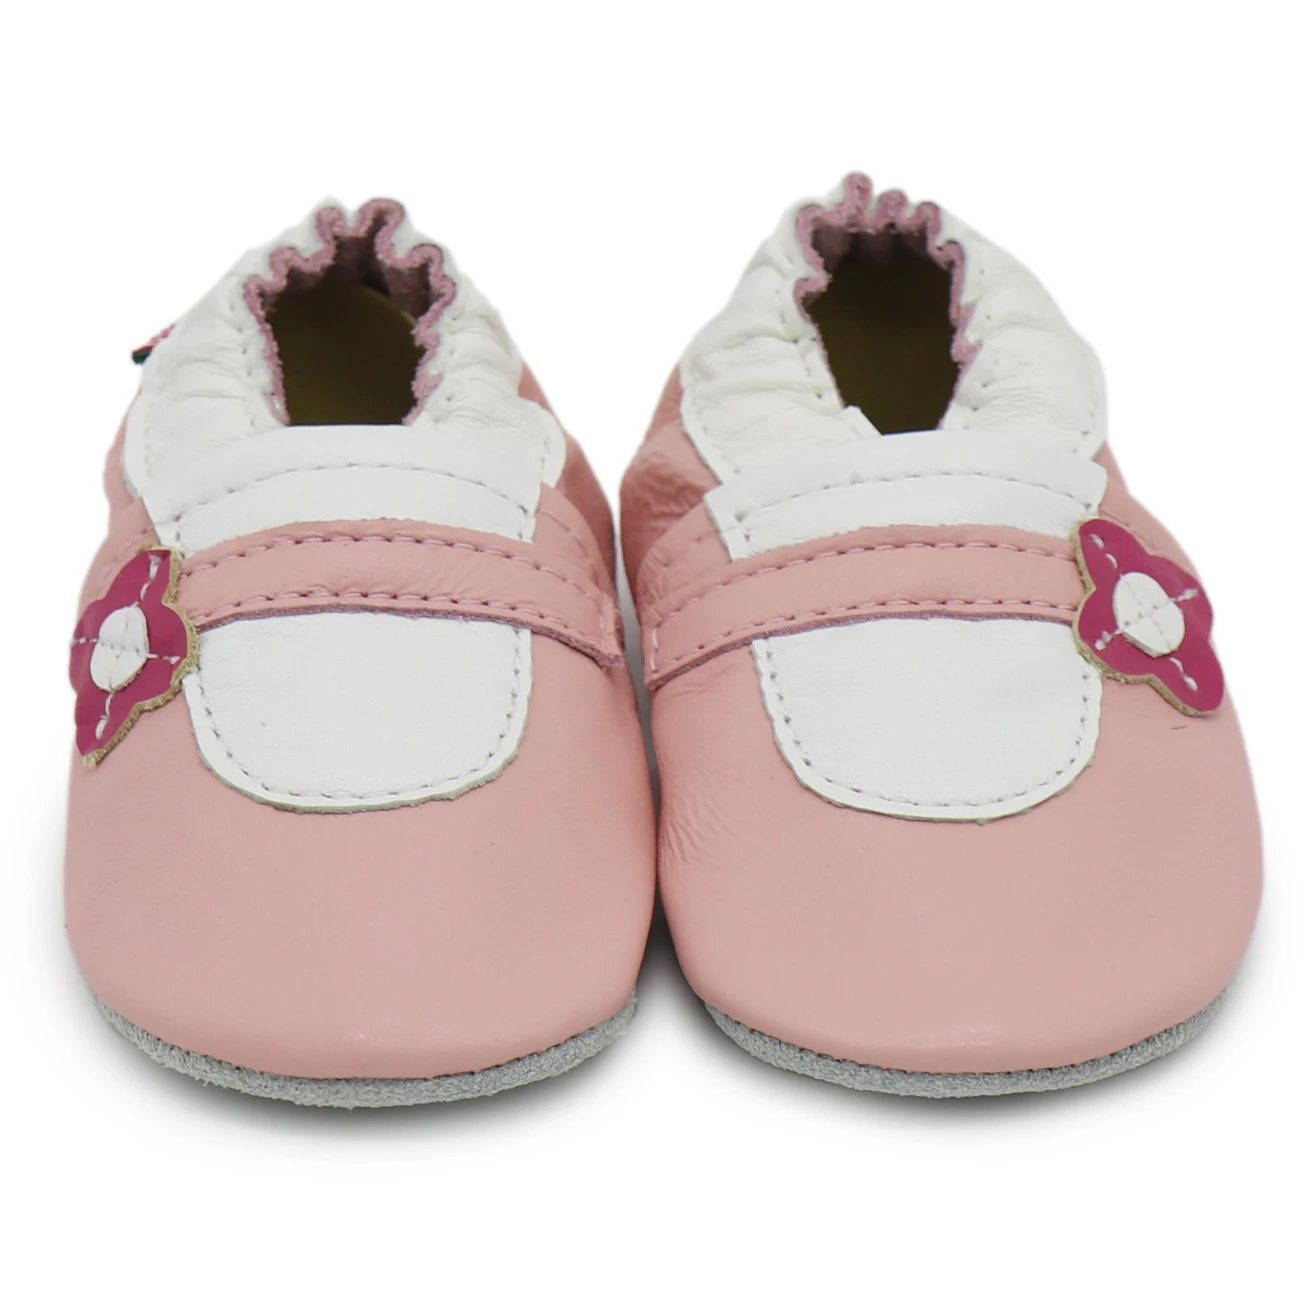 Carozoo-Chaussures en cuir souple pour bébé, souliers pour enfant, nouveau-né, garçon, fille, chaussons, premiers pas